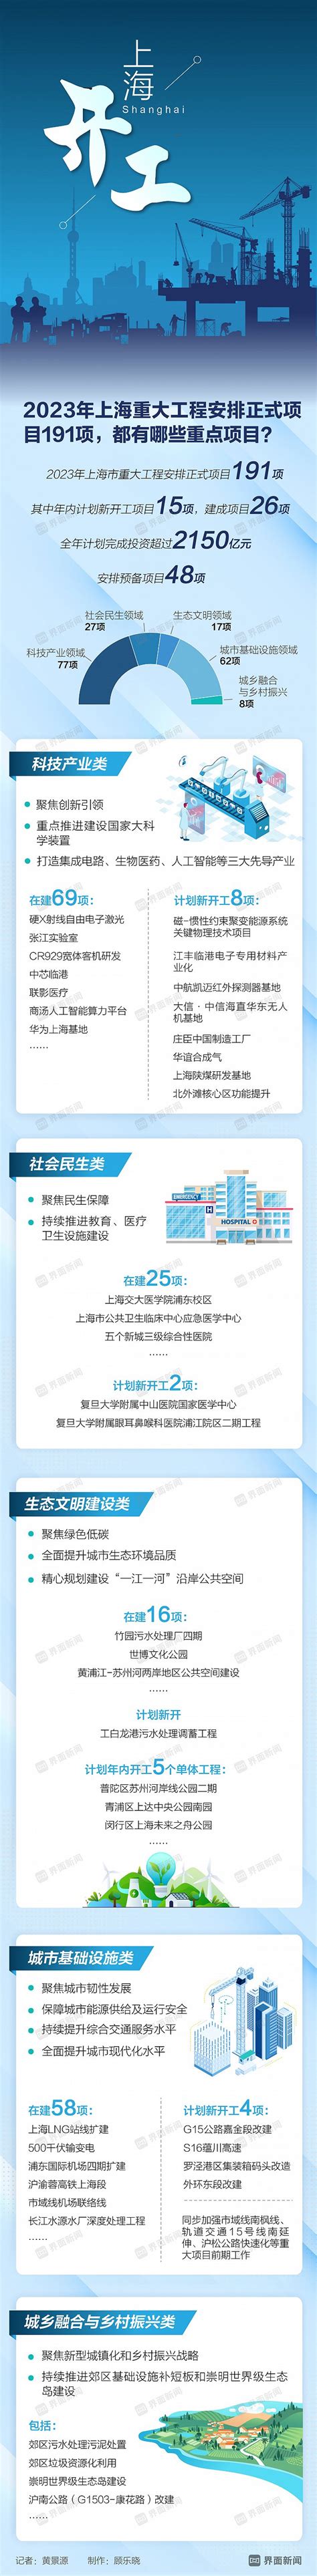 【图解】2023年上海市重大工程安排正式项目191项，都有哪些重点项目？|界面新闻